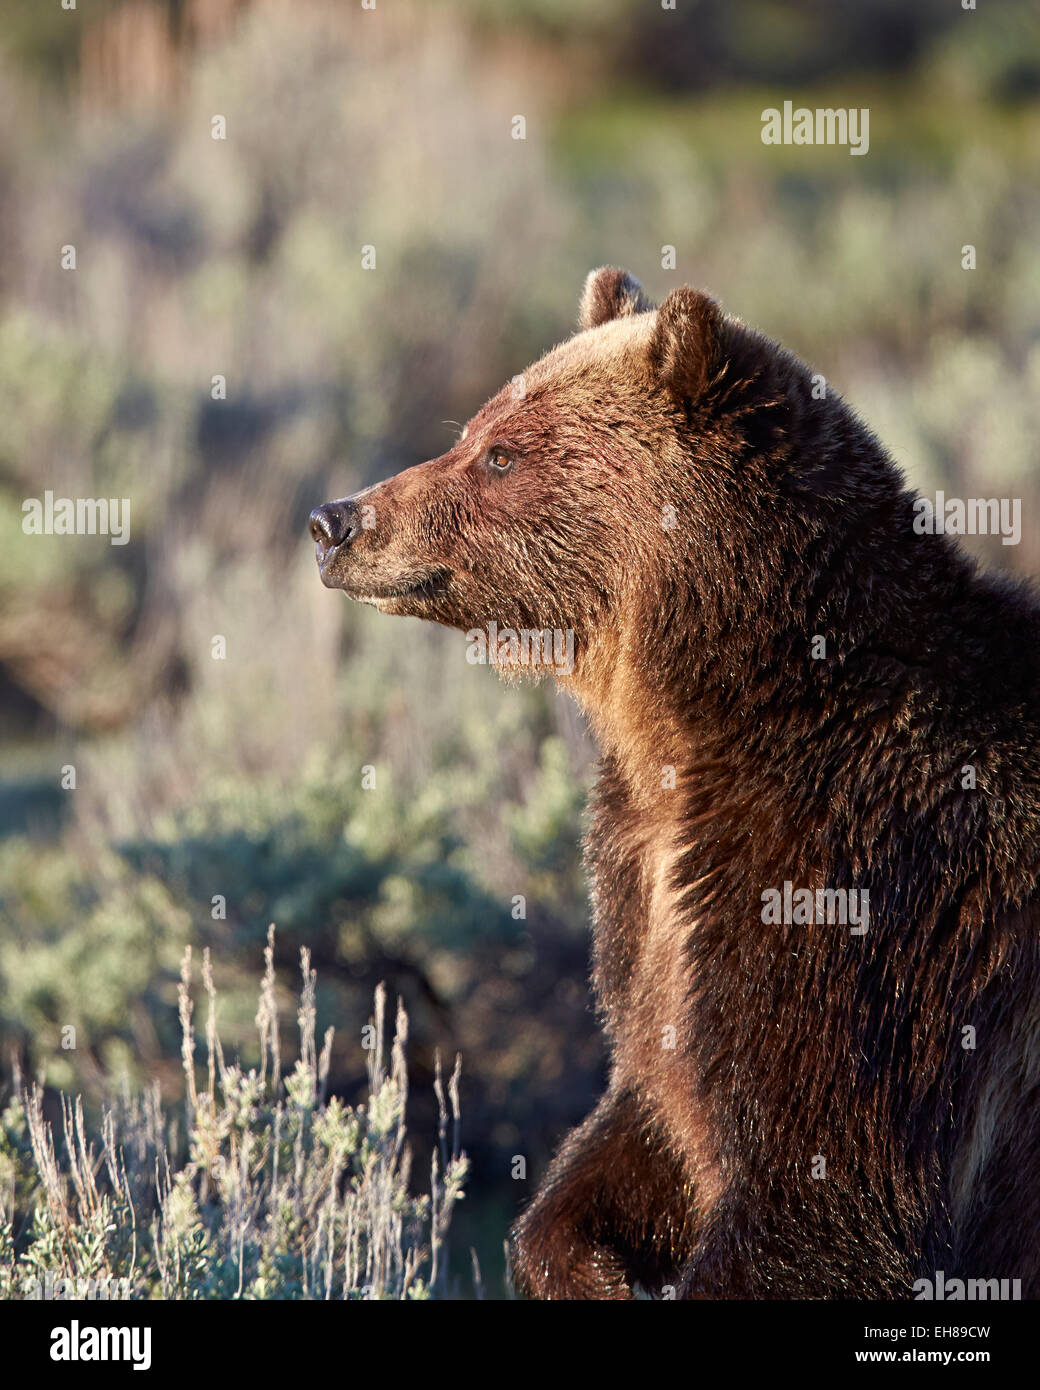 Ours grizzli (Ursus arctos horribilis), Parc National de Yellowstone, Wyoming, États-Unis d'Amérique, Amérique du Nord Banque D'Images